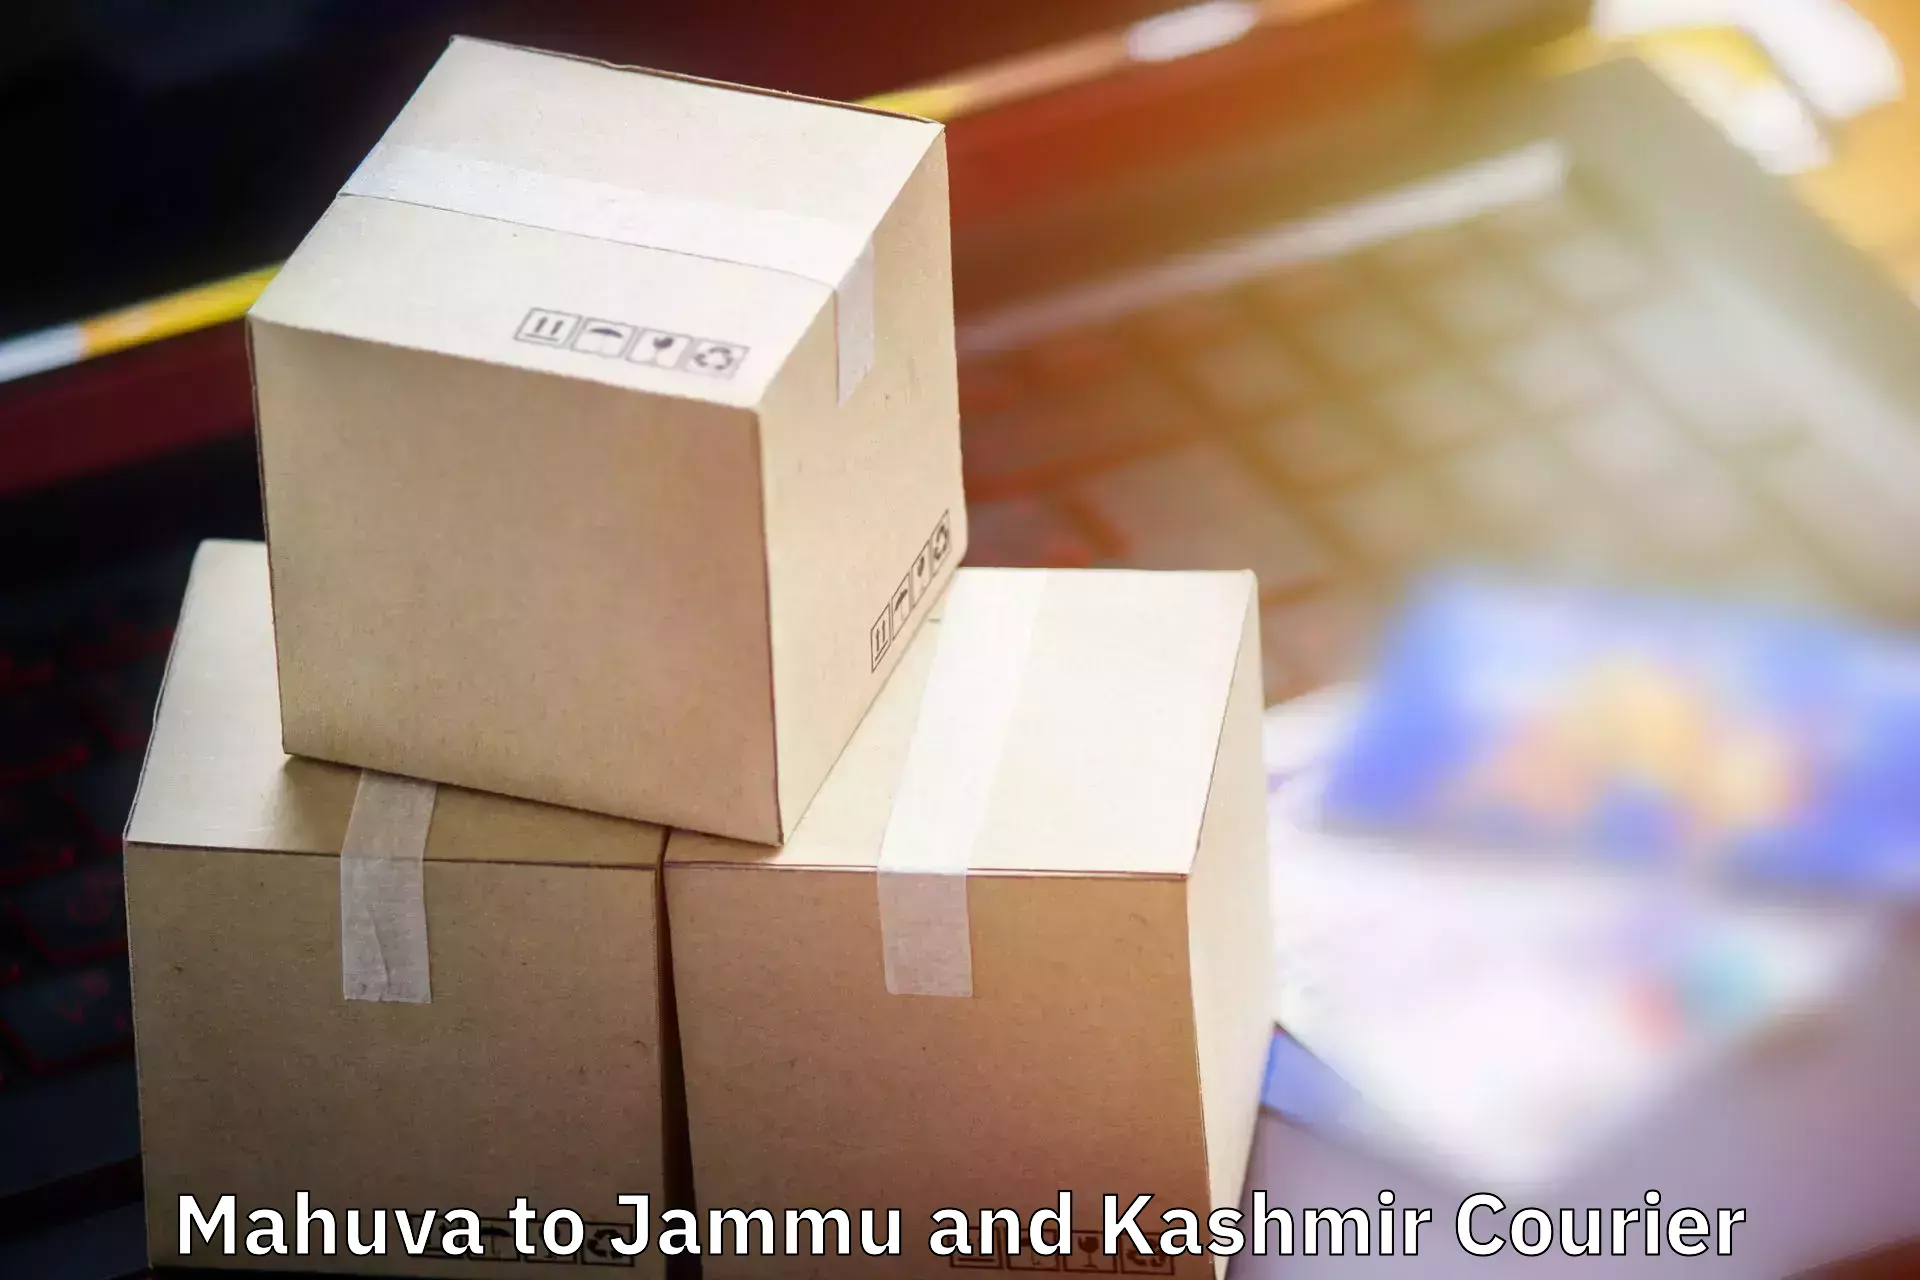 Luggage delivery network Mahuva to Doda